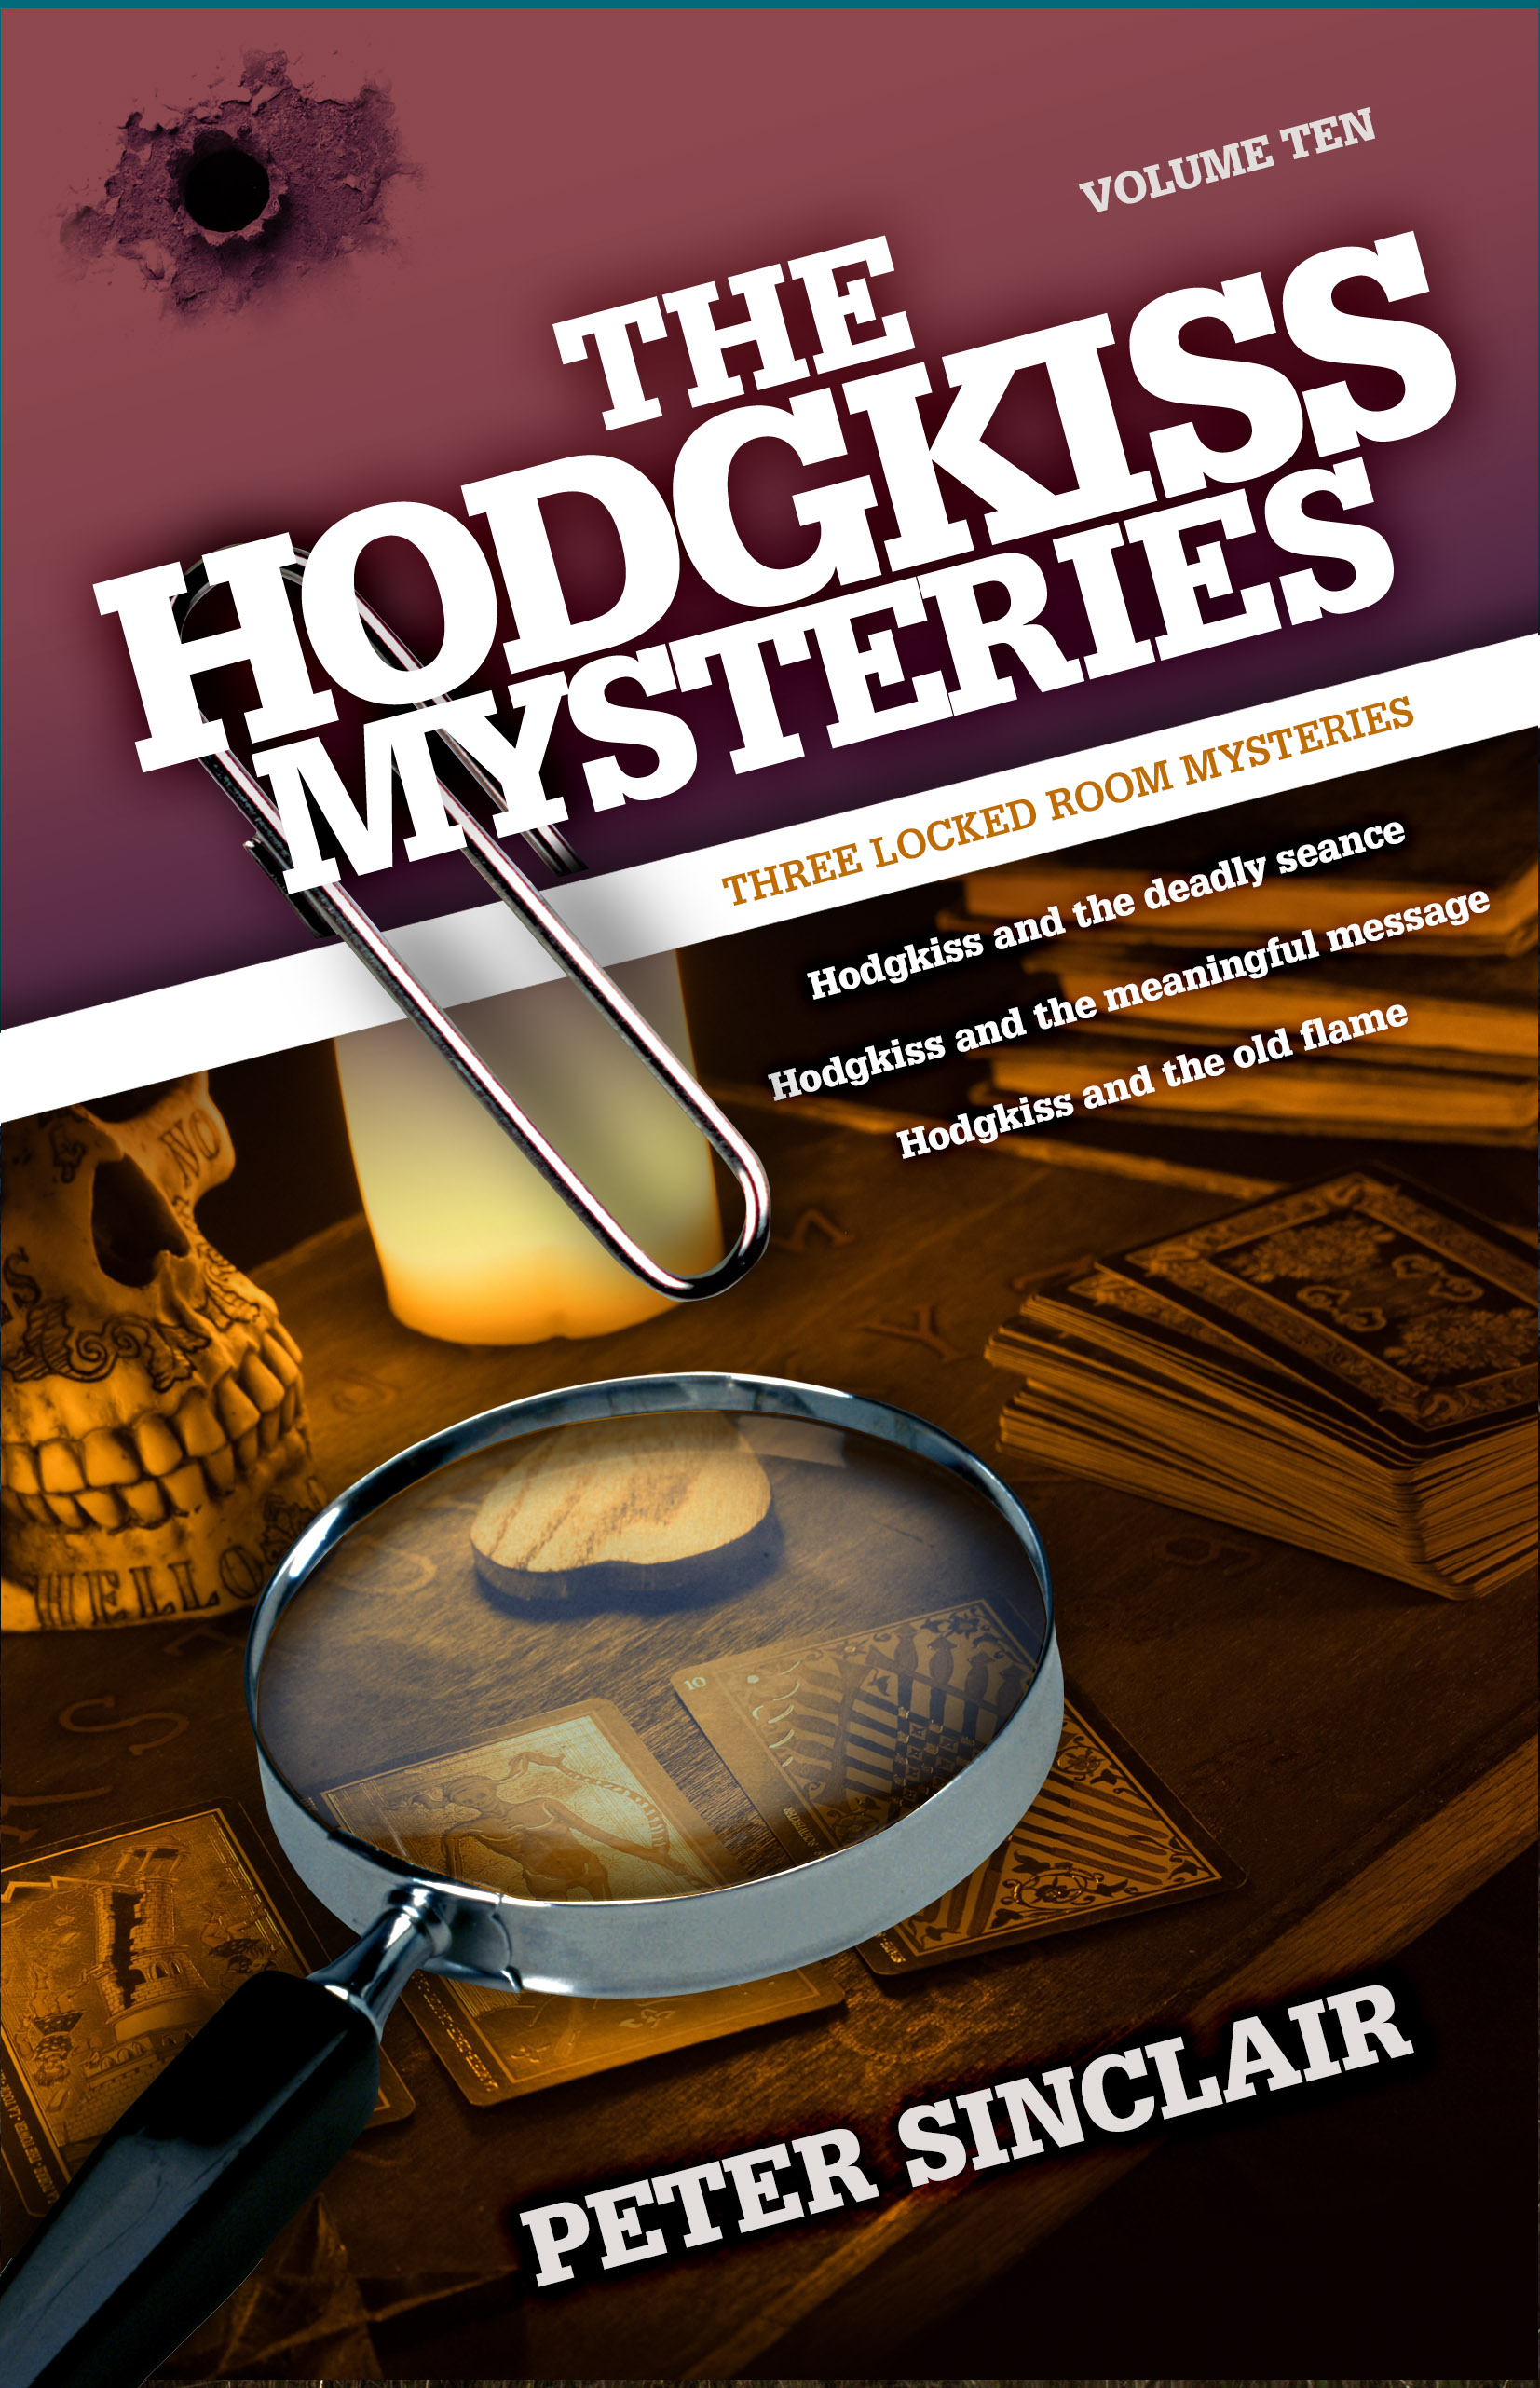 Hodgkiss Mysteries Volume 10.jpg